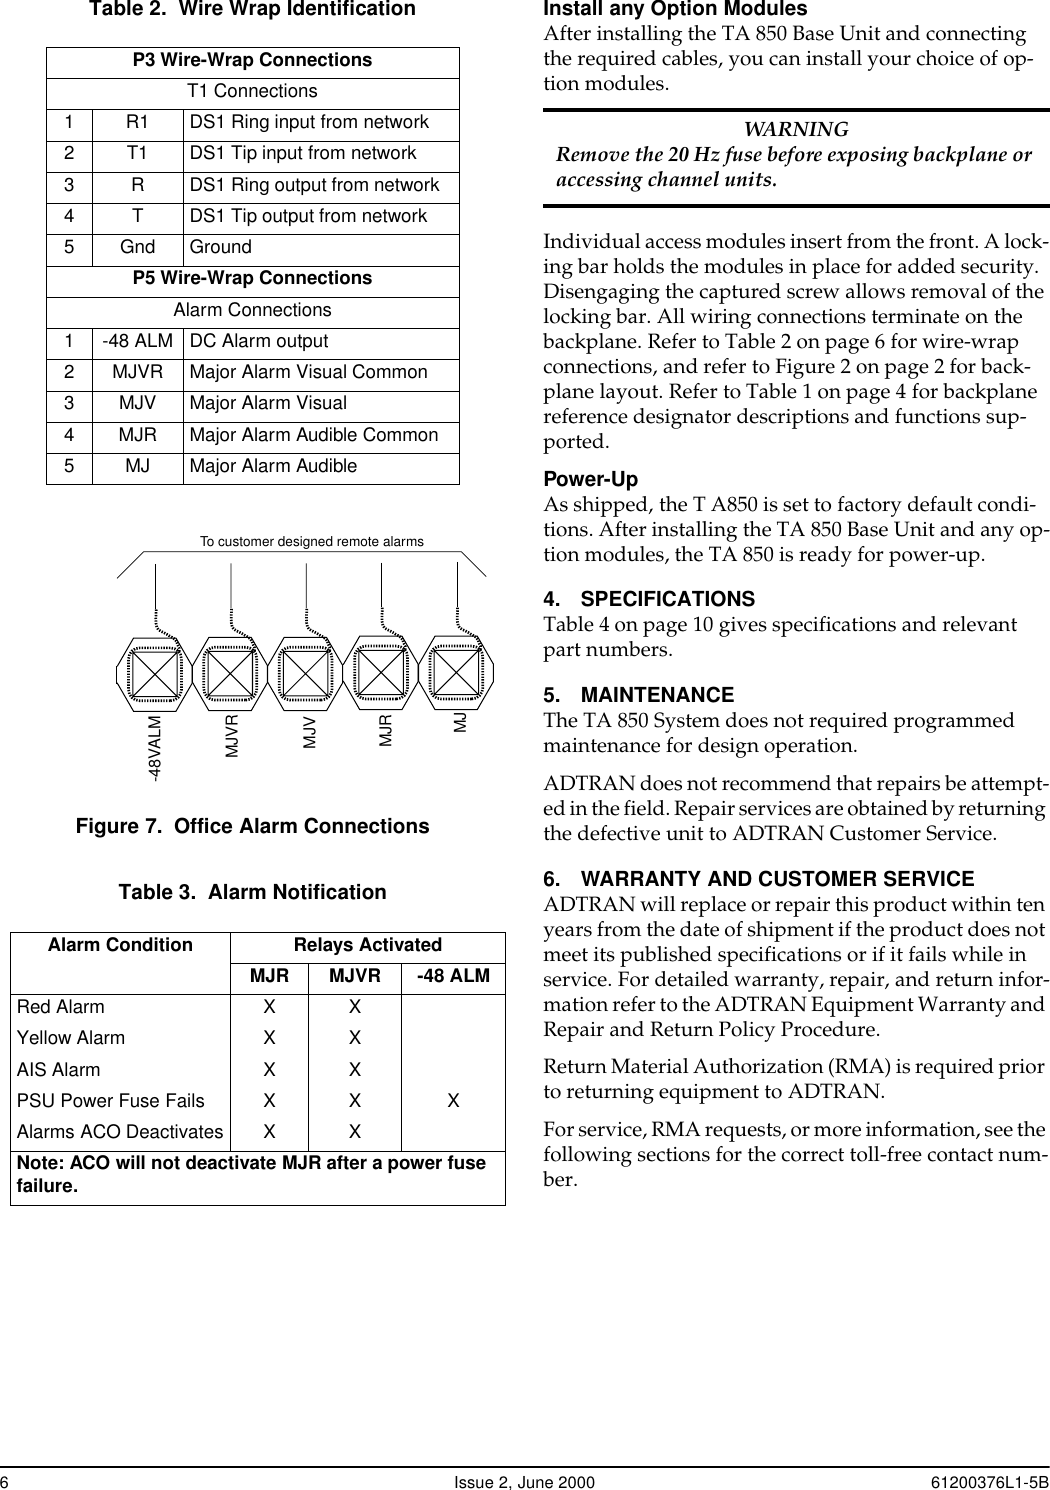 Page 6 of 10 - Adtran Adtran-Recording-Equipment-850-Users-Manual-  Adtran-recording-equipment-850-users-manual